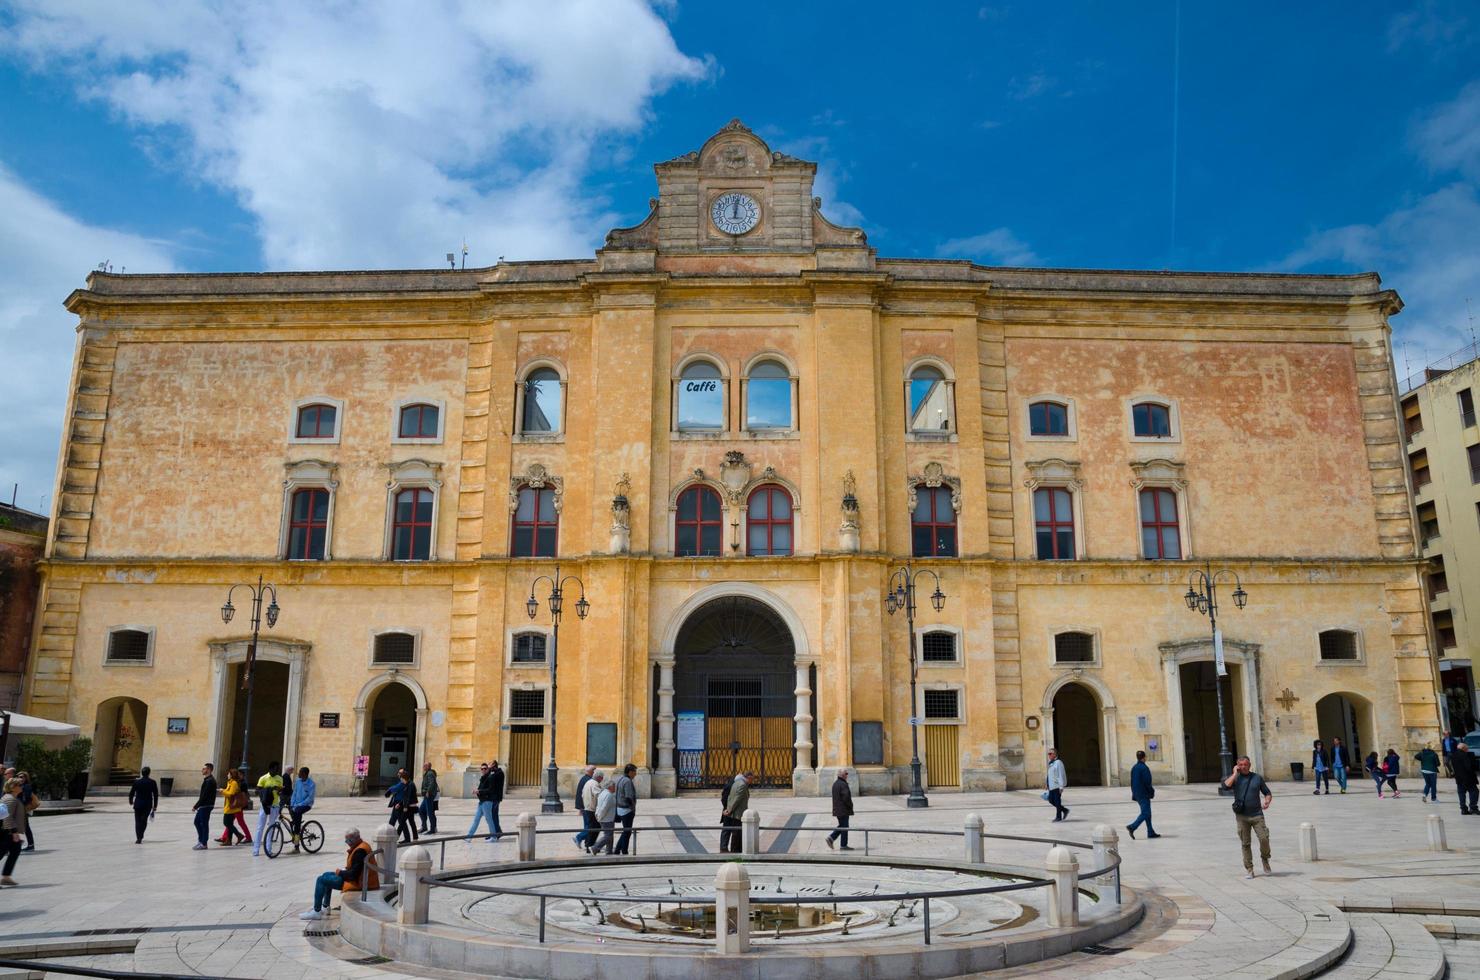 Matera, Italien - 6. Mai 2018 Menschen zu Fuß in der Nähe von Cinema Comunale Palazzo dell'annunziata Palast mit Uhr an der Fassade und Brunnen auf der Piazza Vittorio Veneto Platz blauer Himmelshintergrund foto